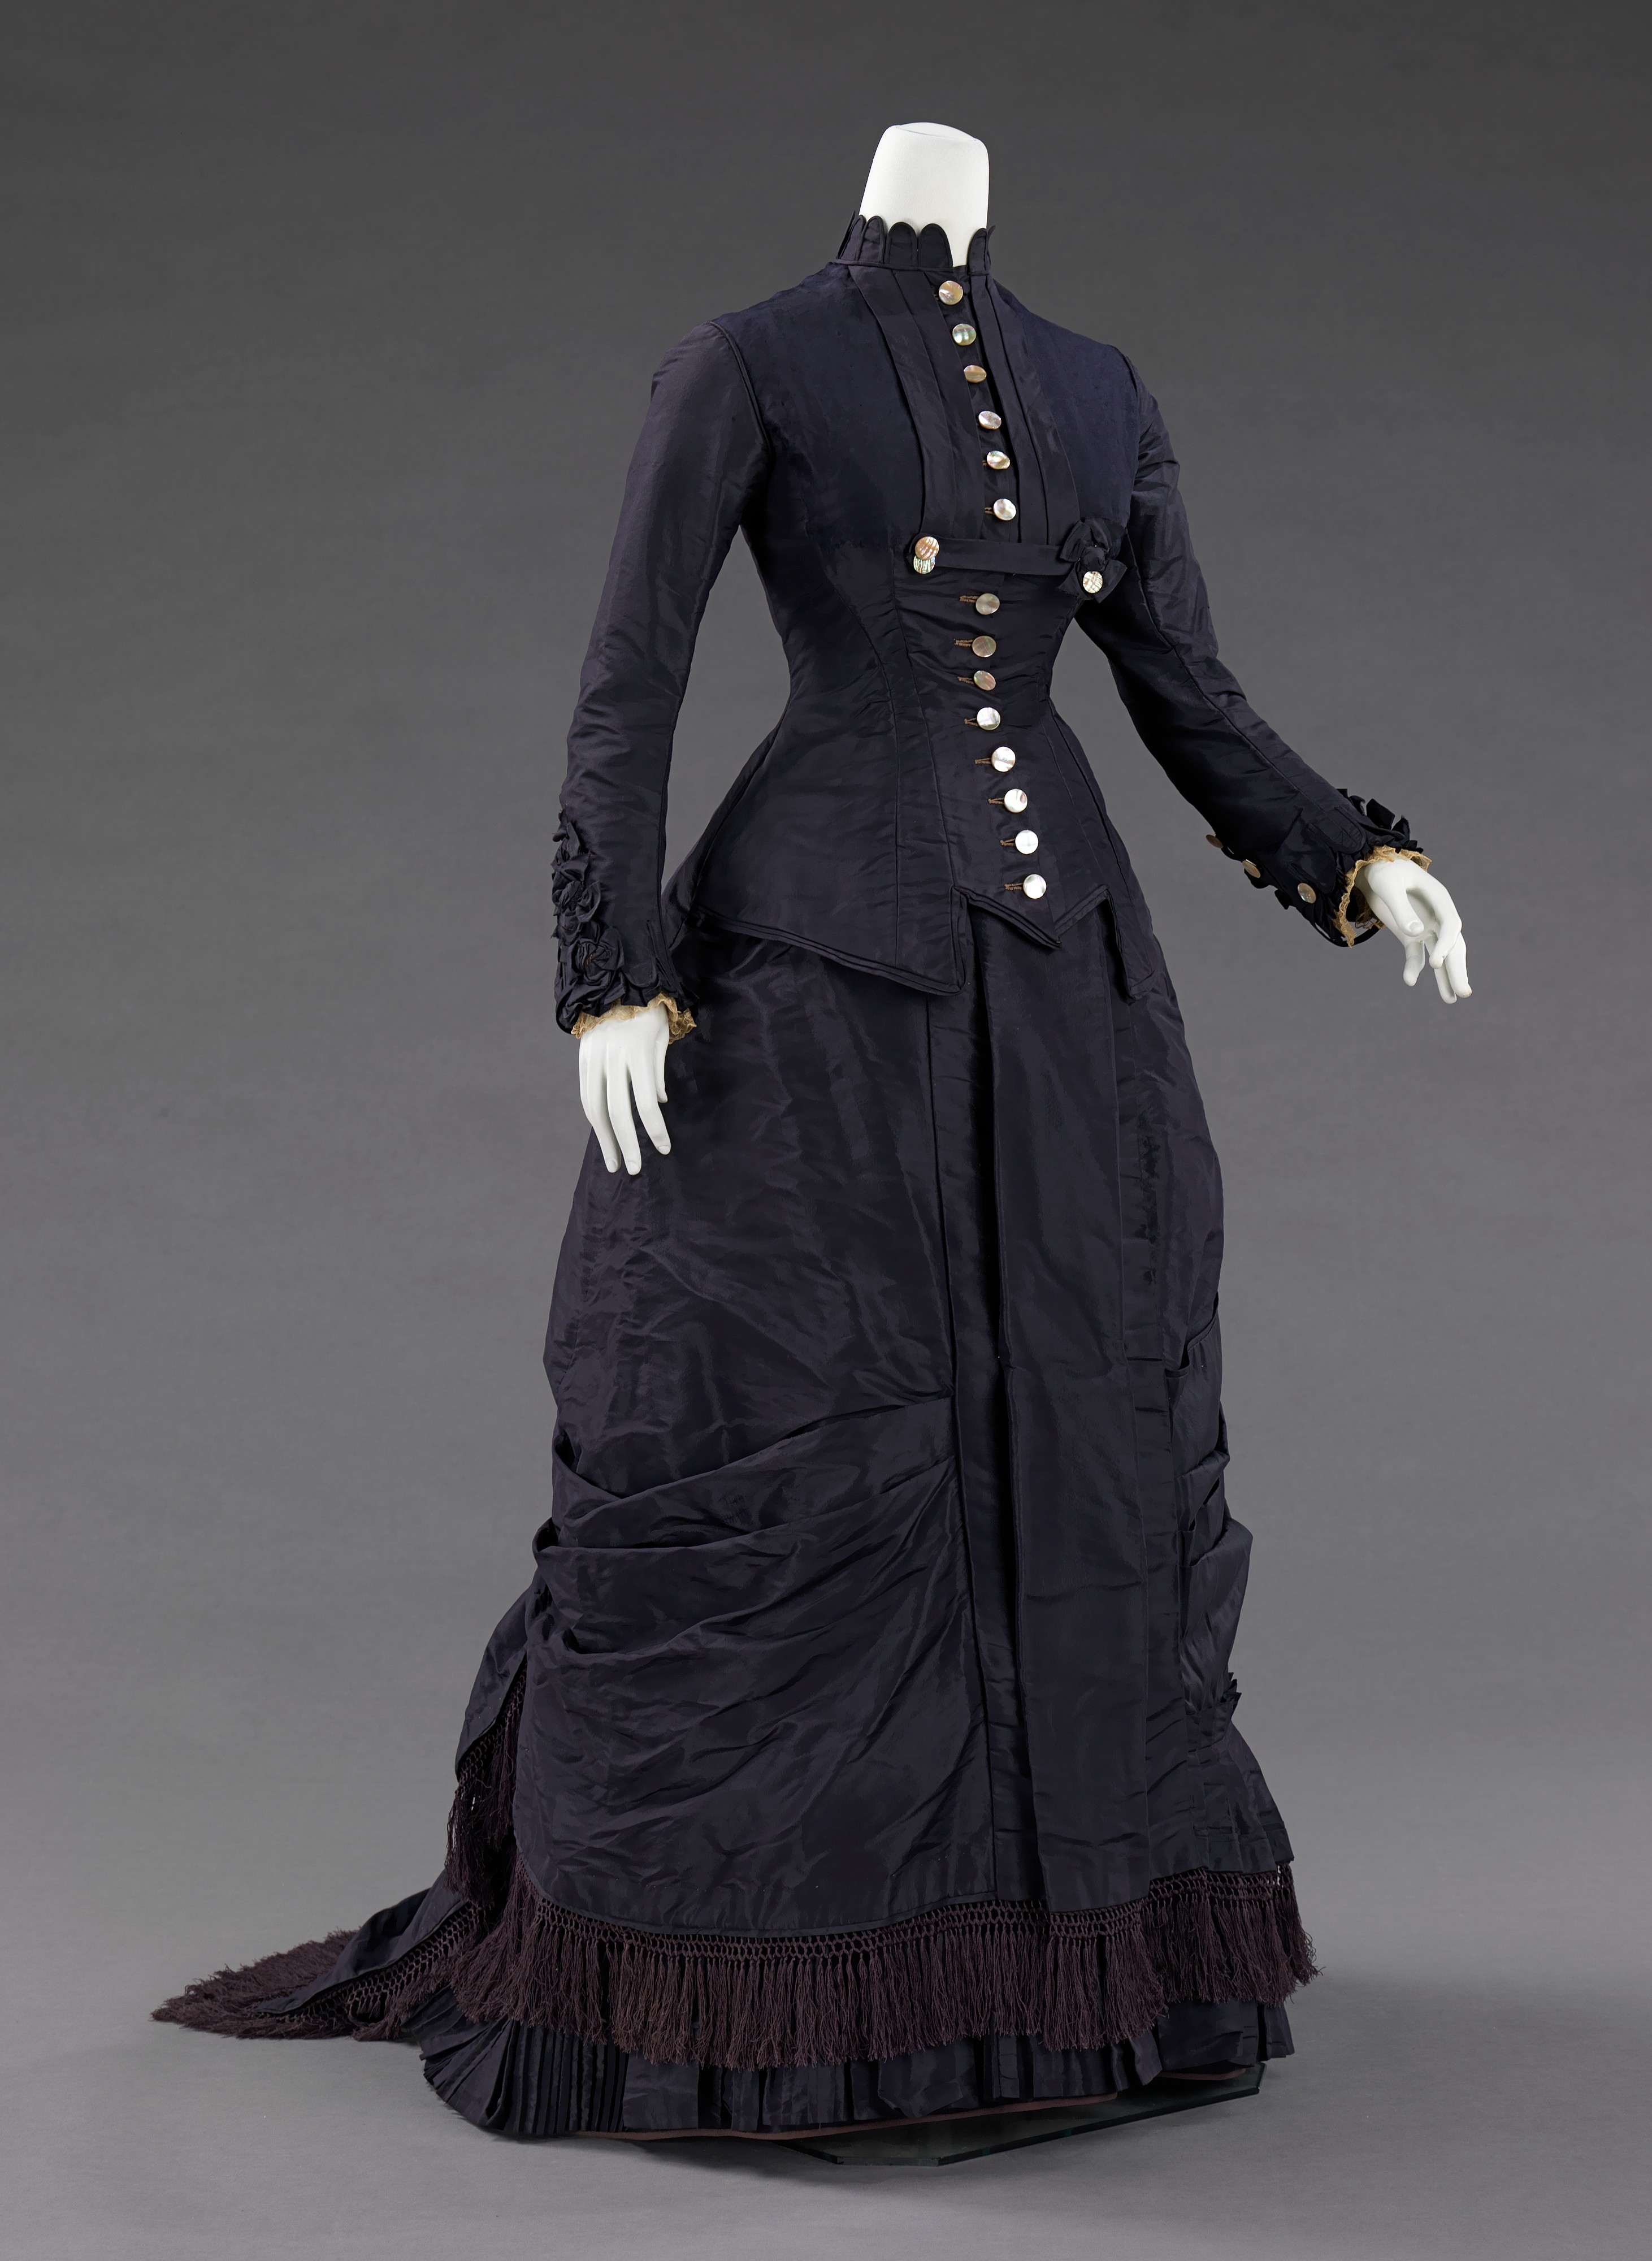 Платья 19 века викторианской эпохи